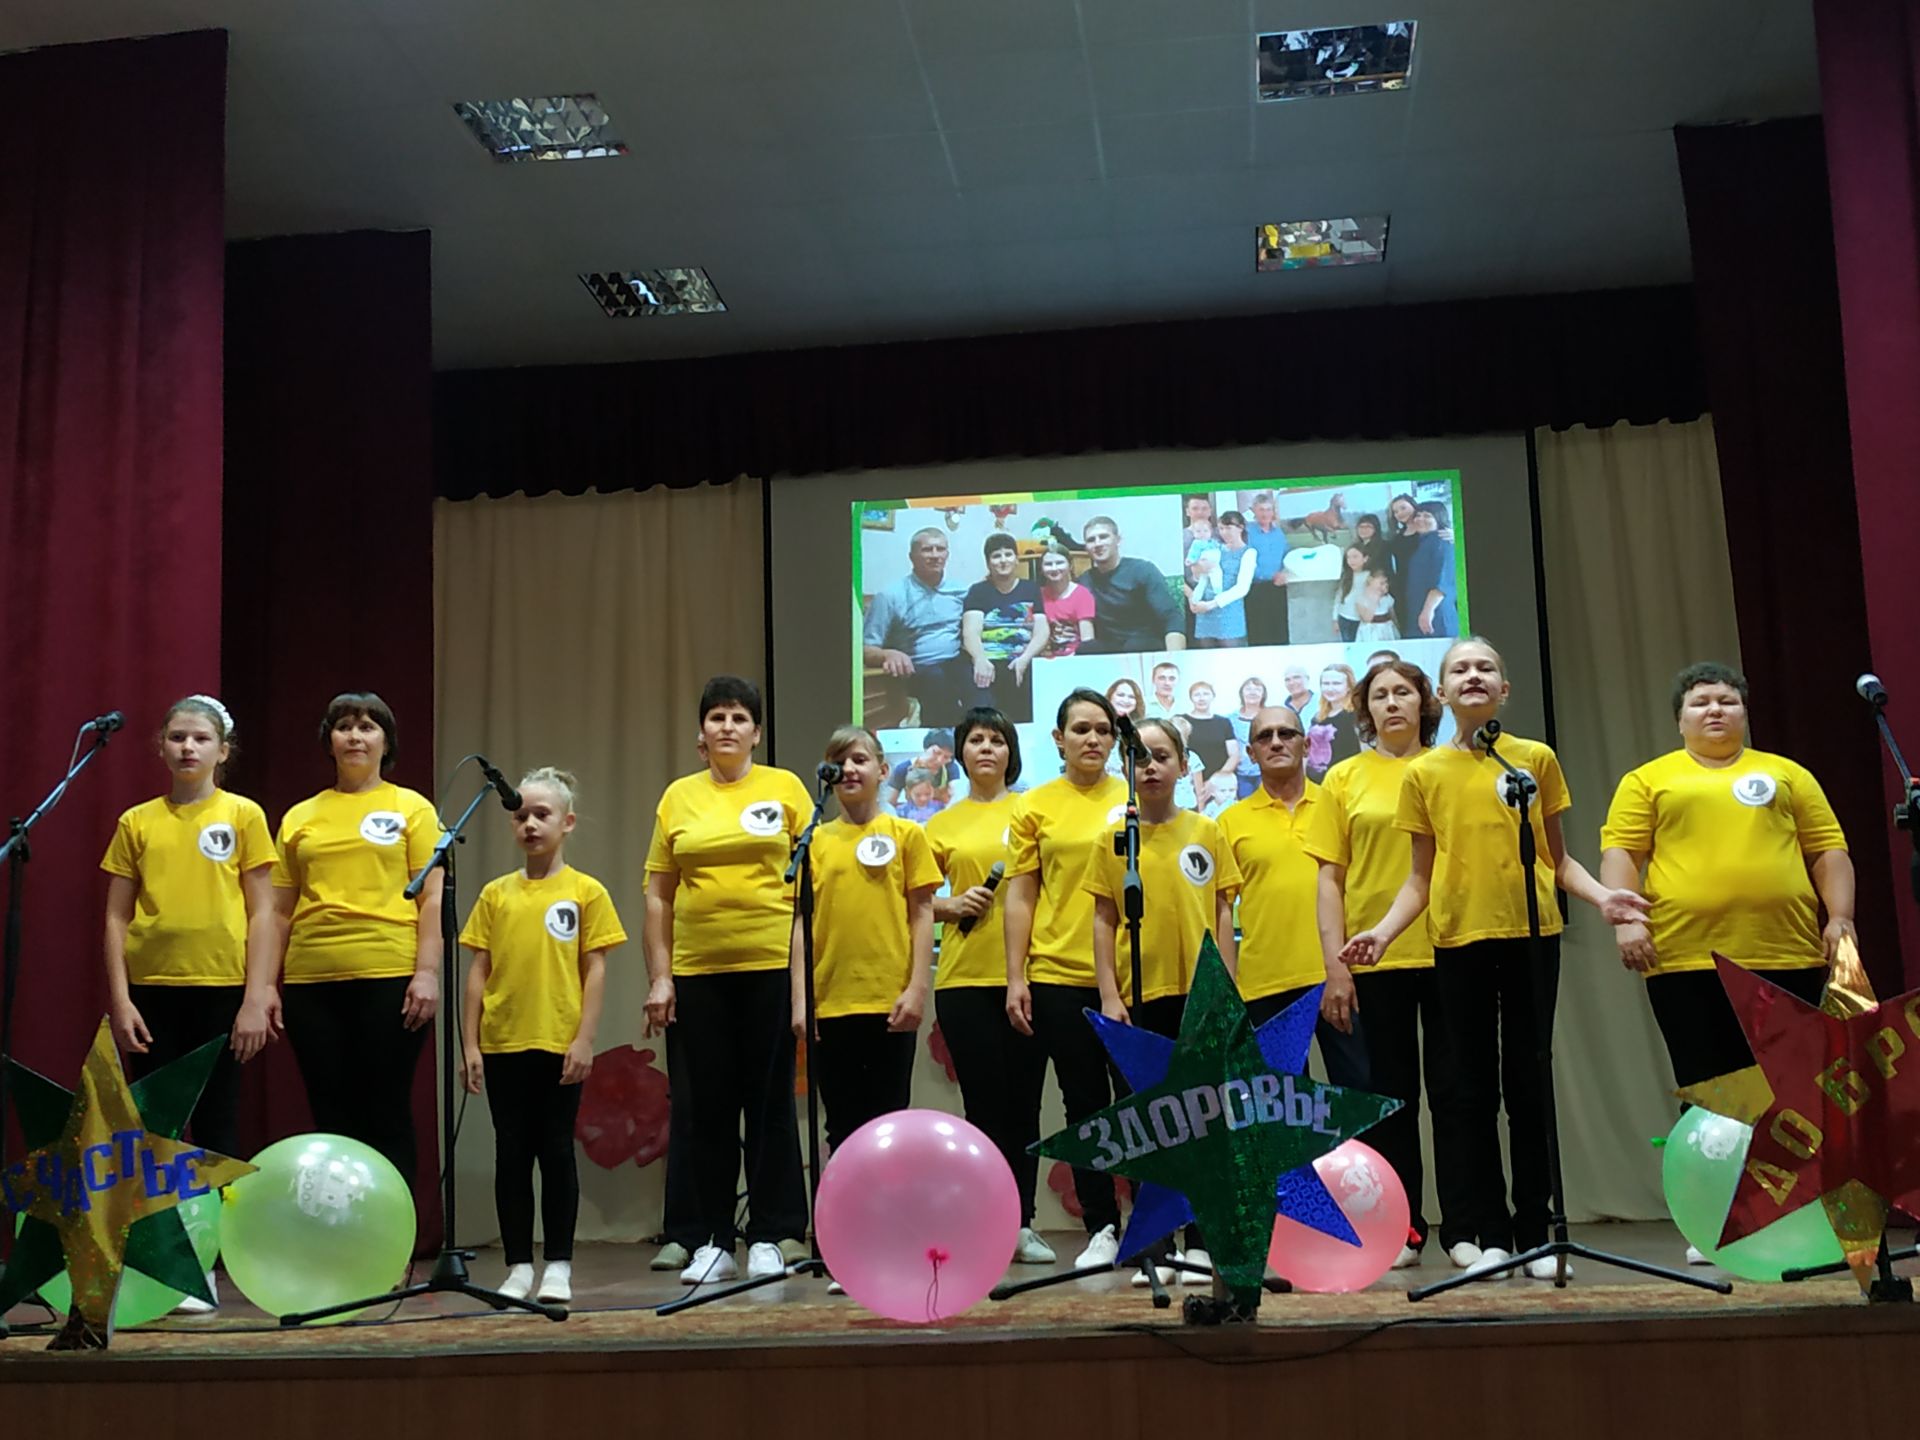 В Спасском районе прошел конкурс среди родительских комитетов (ФОТО)